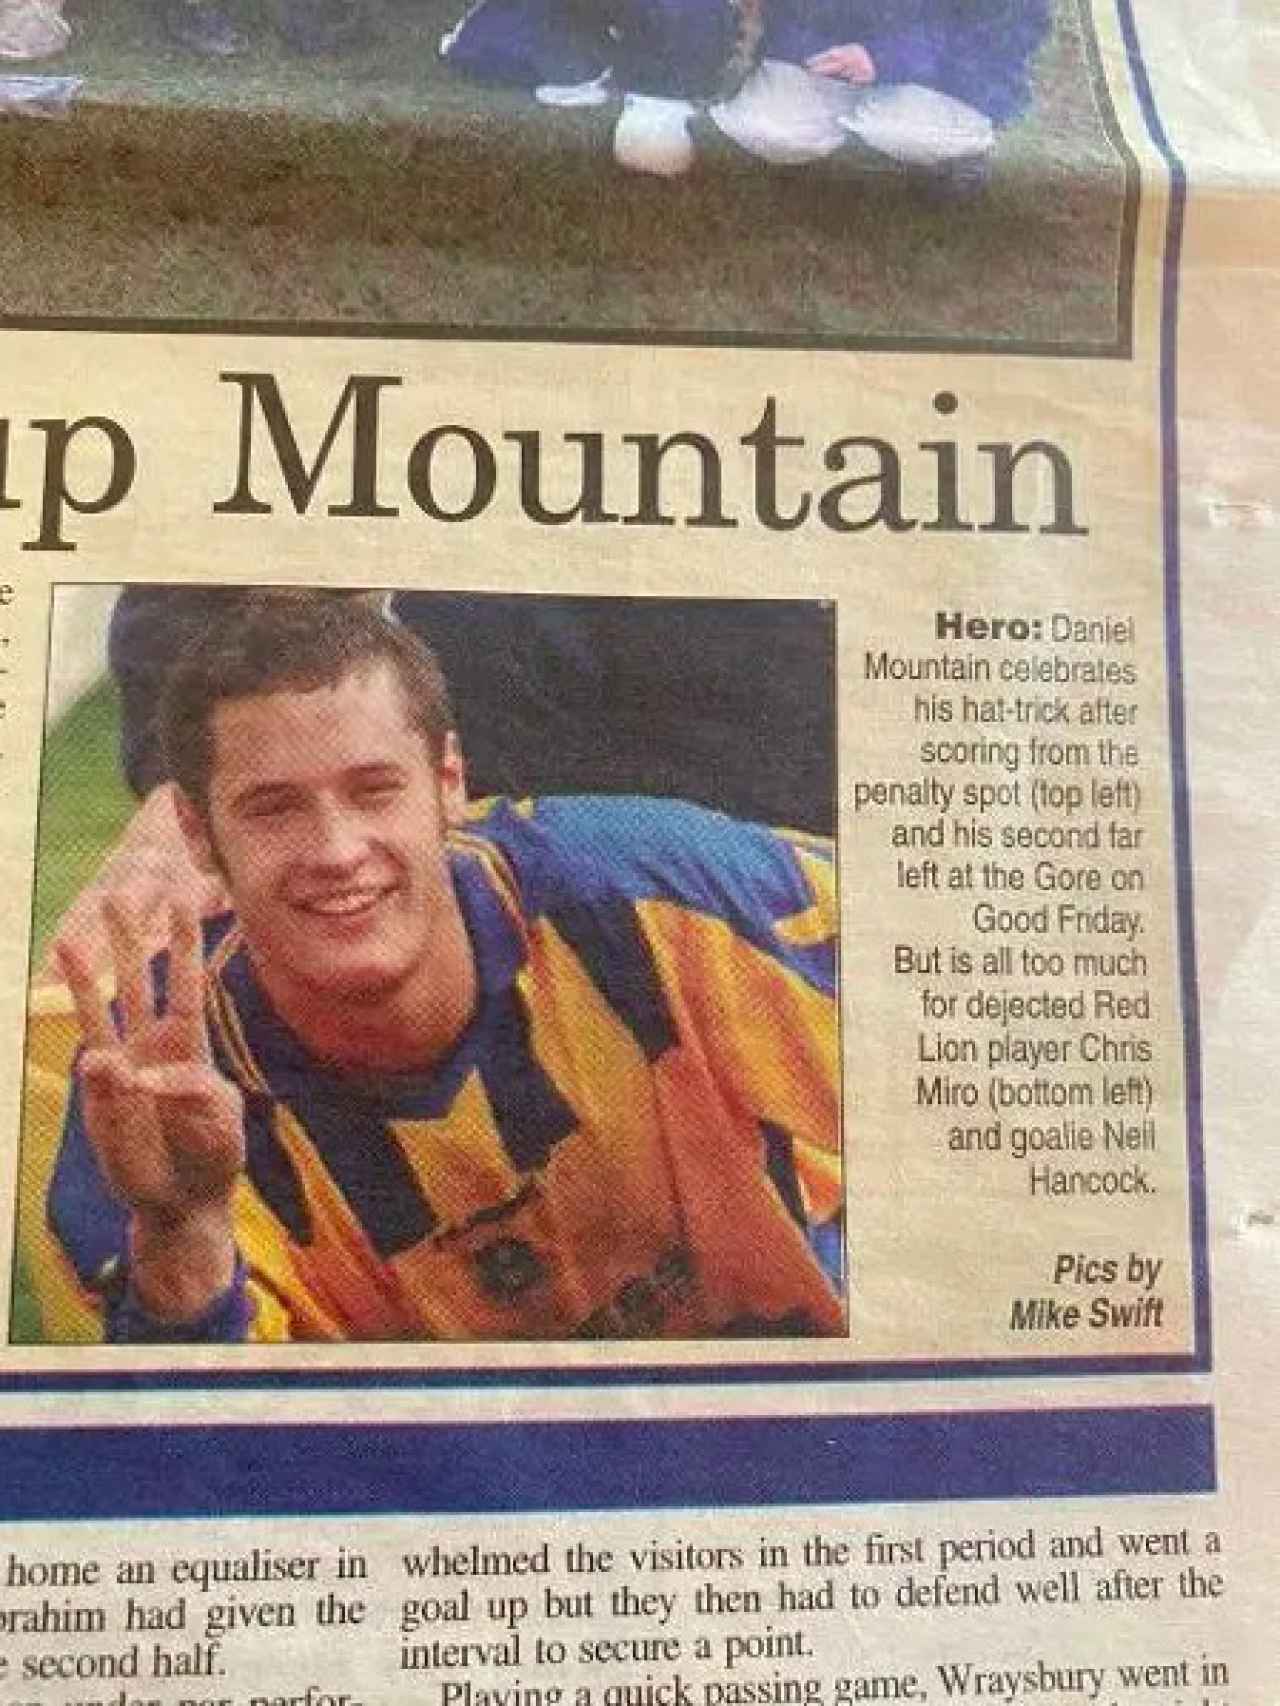 Danny Mountain, en los periódicos británicos como futbolista